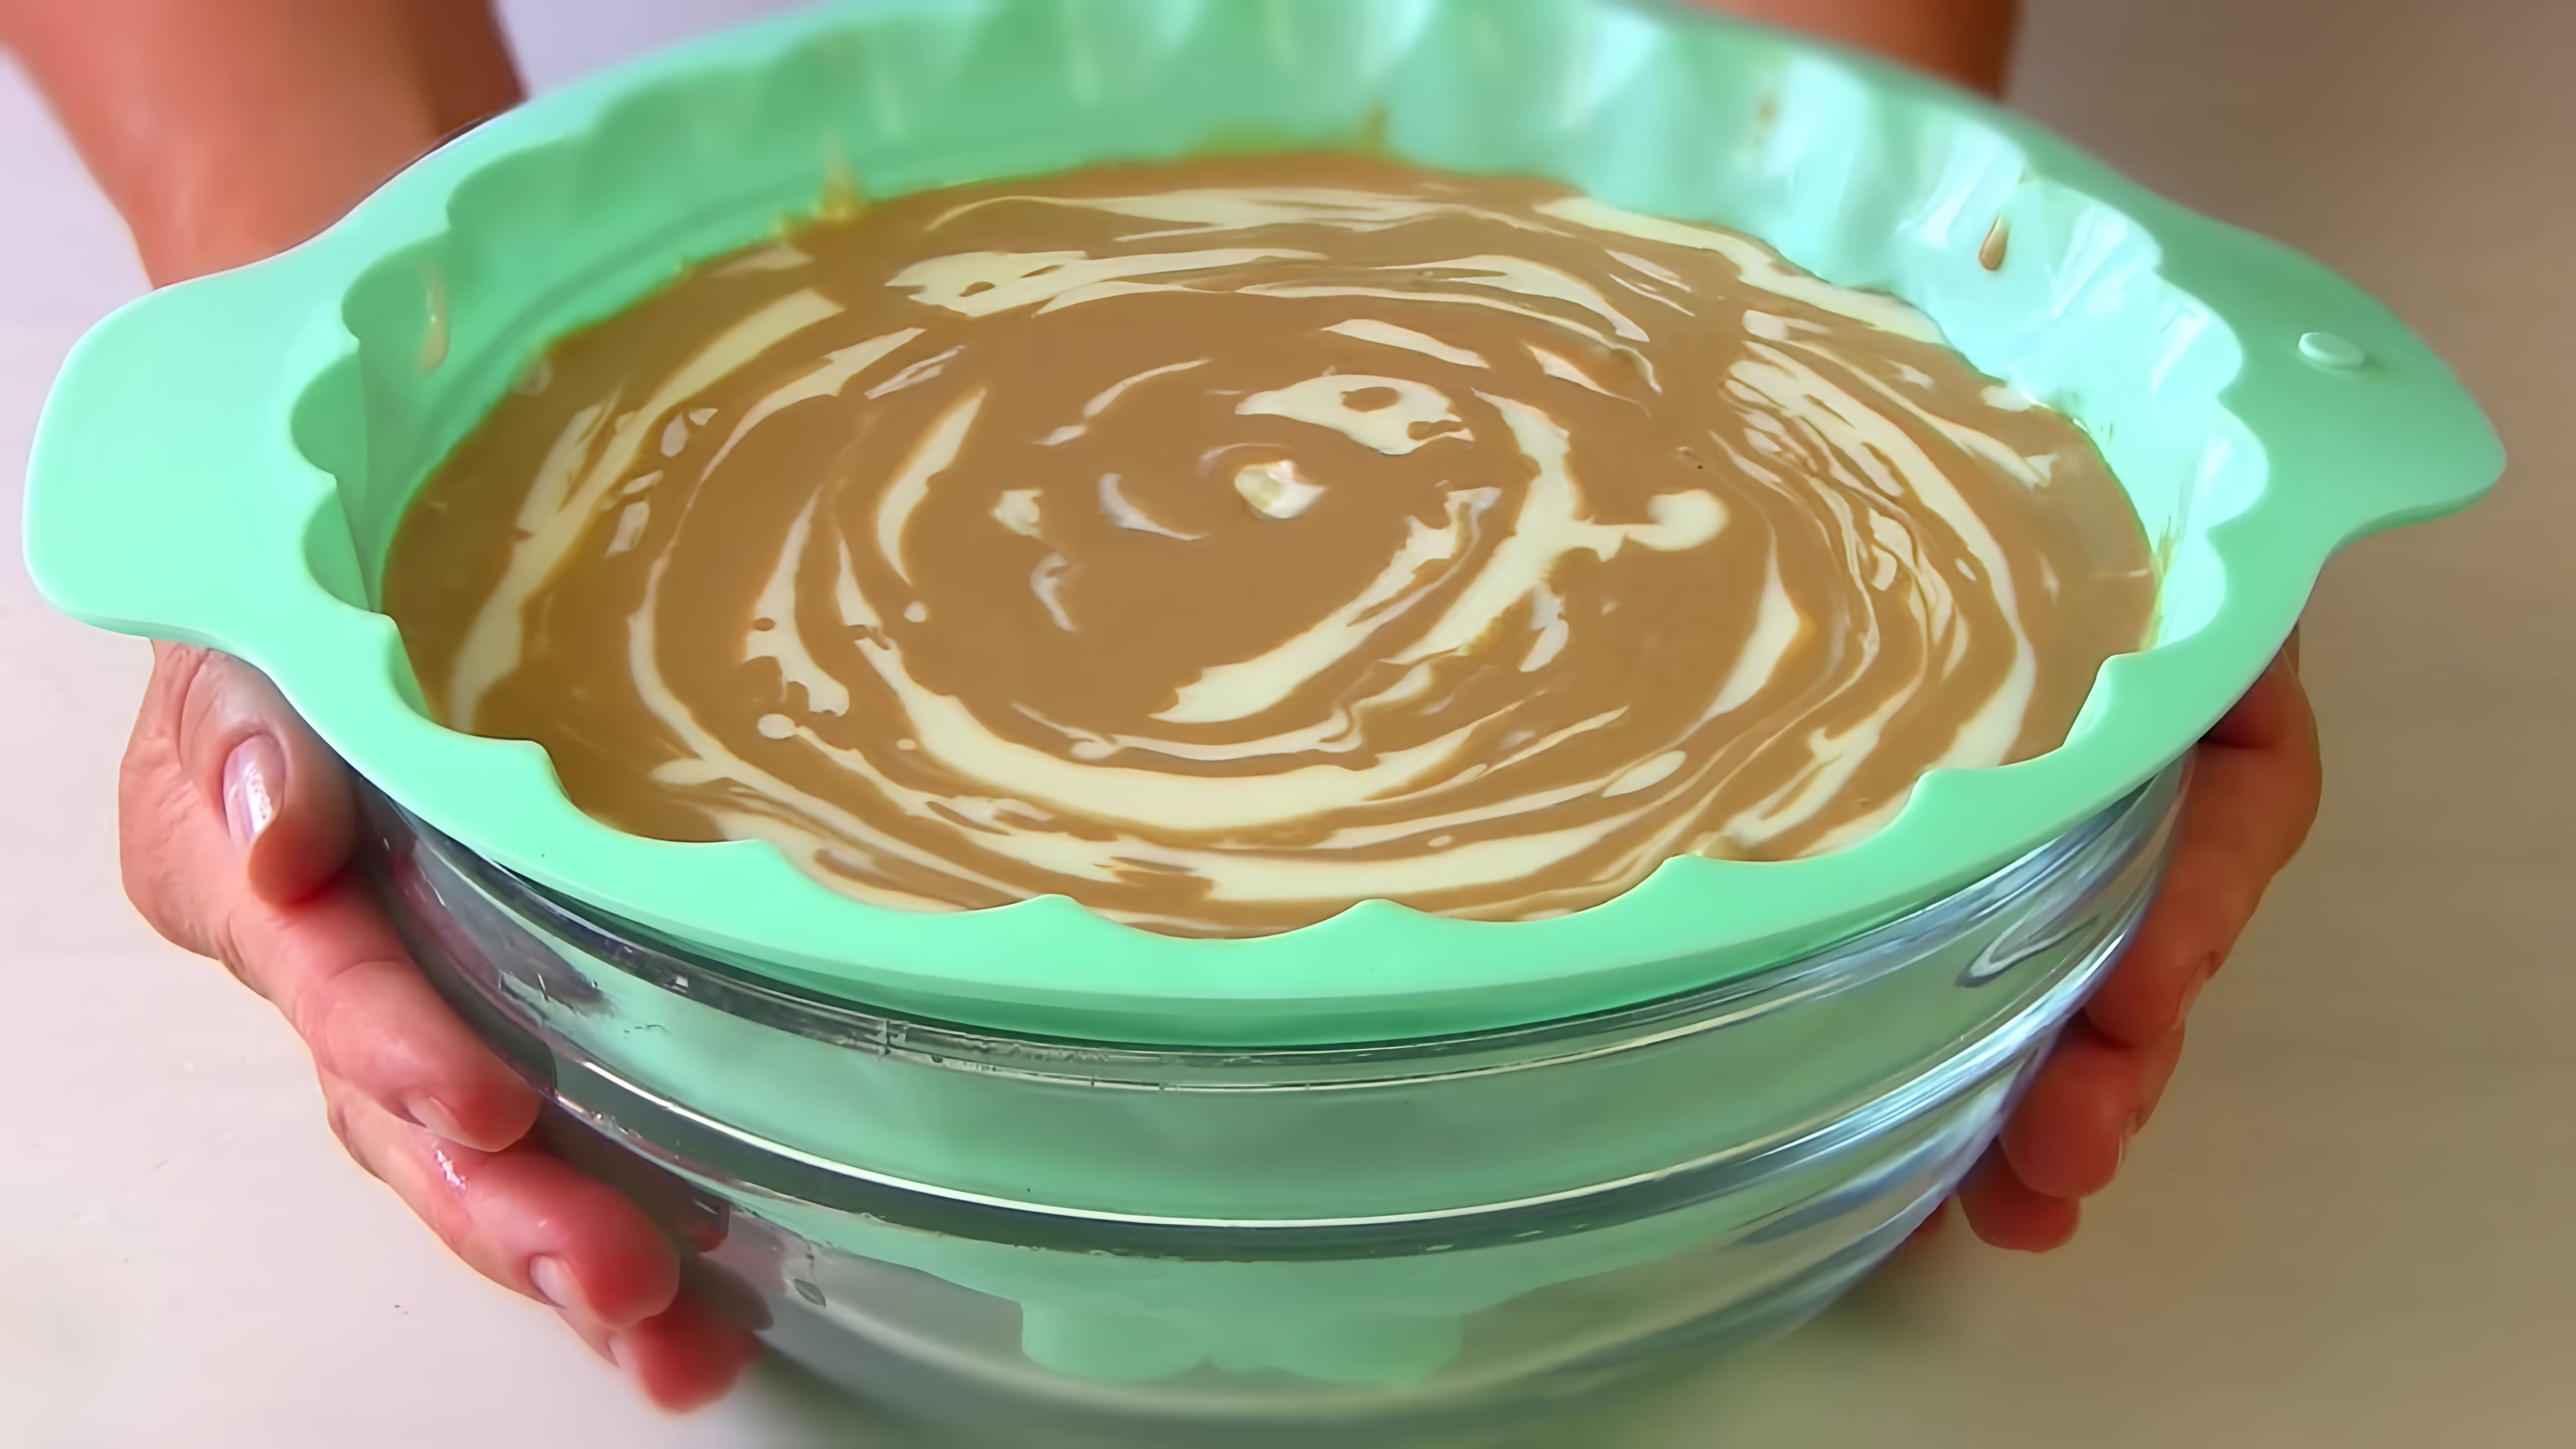 В этом видео демонстрируется рецепт приготовления творожного торта без выпечки